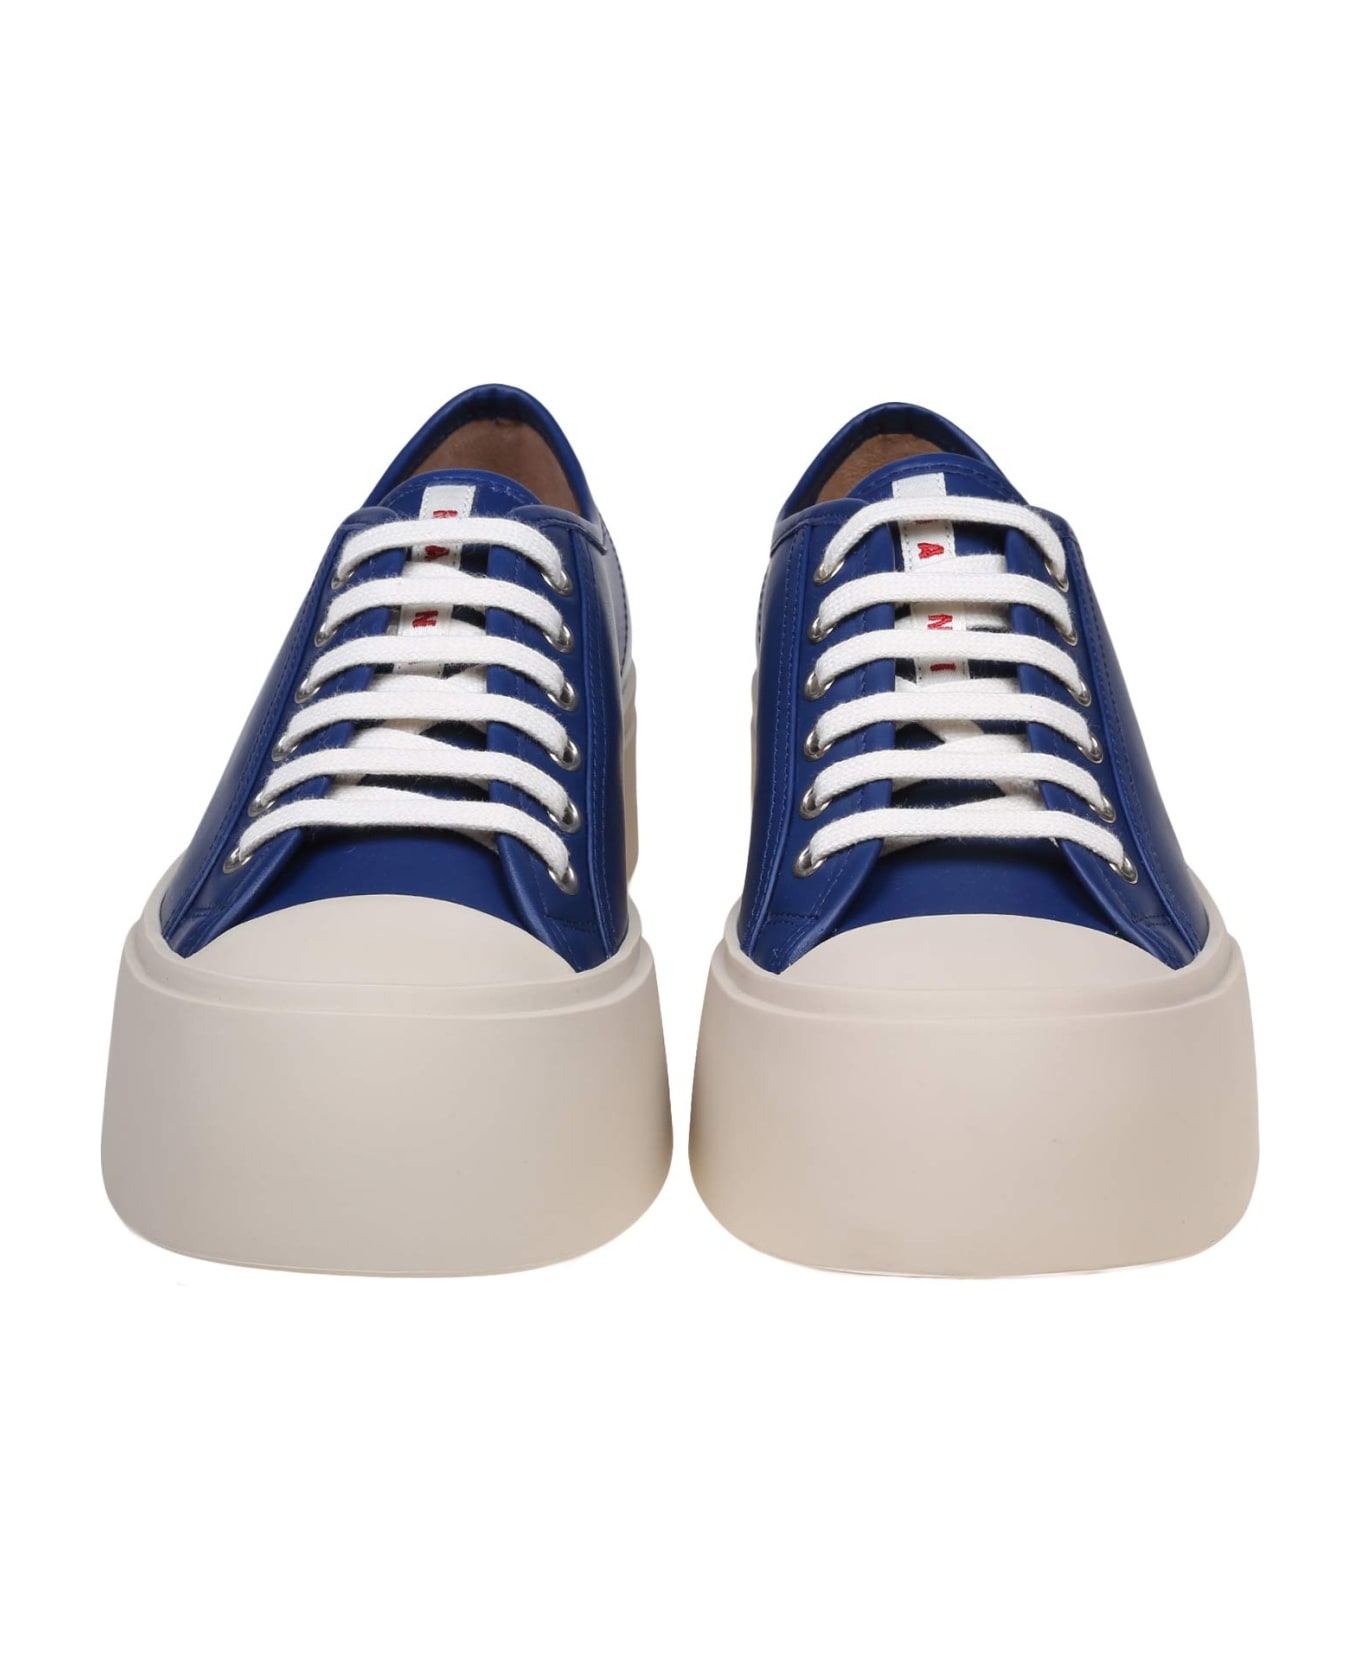 Marni Pablo Sneakers In Blue Nappa - BLUE